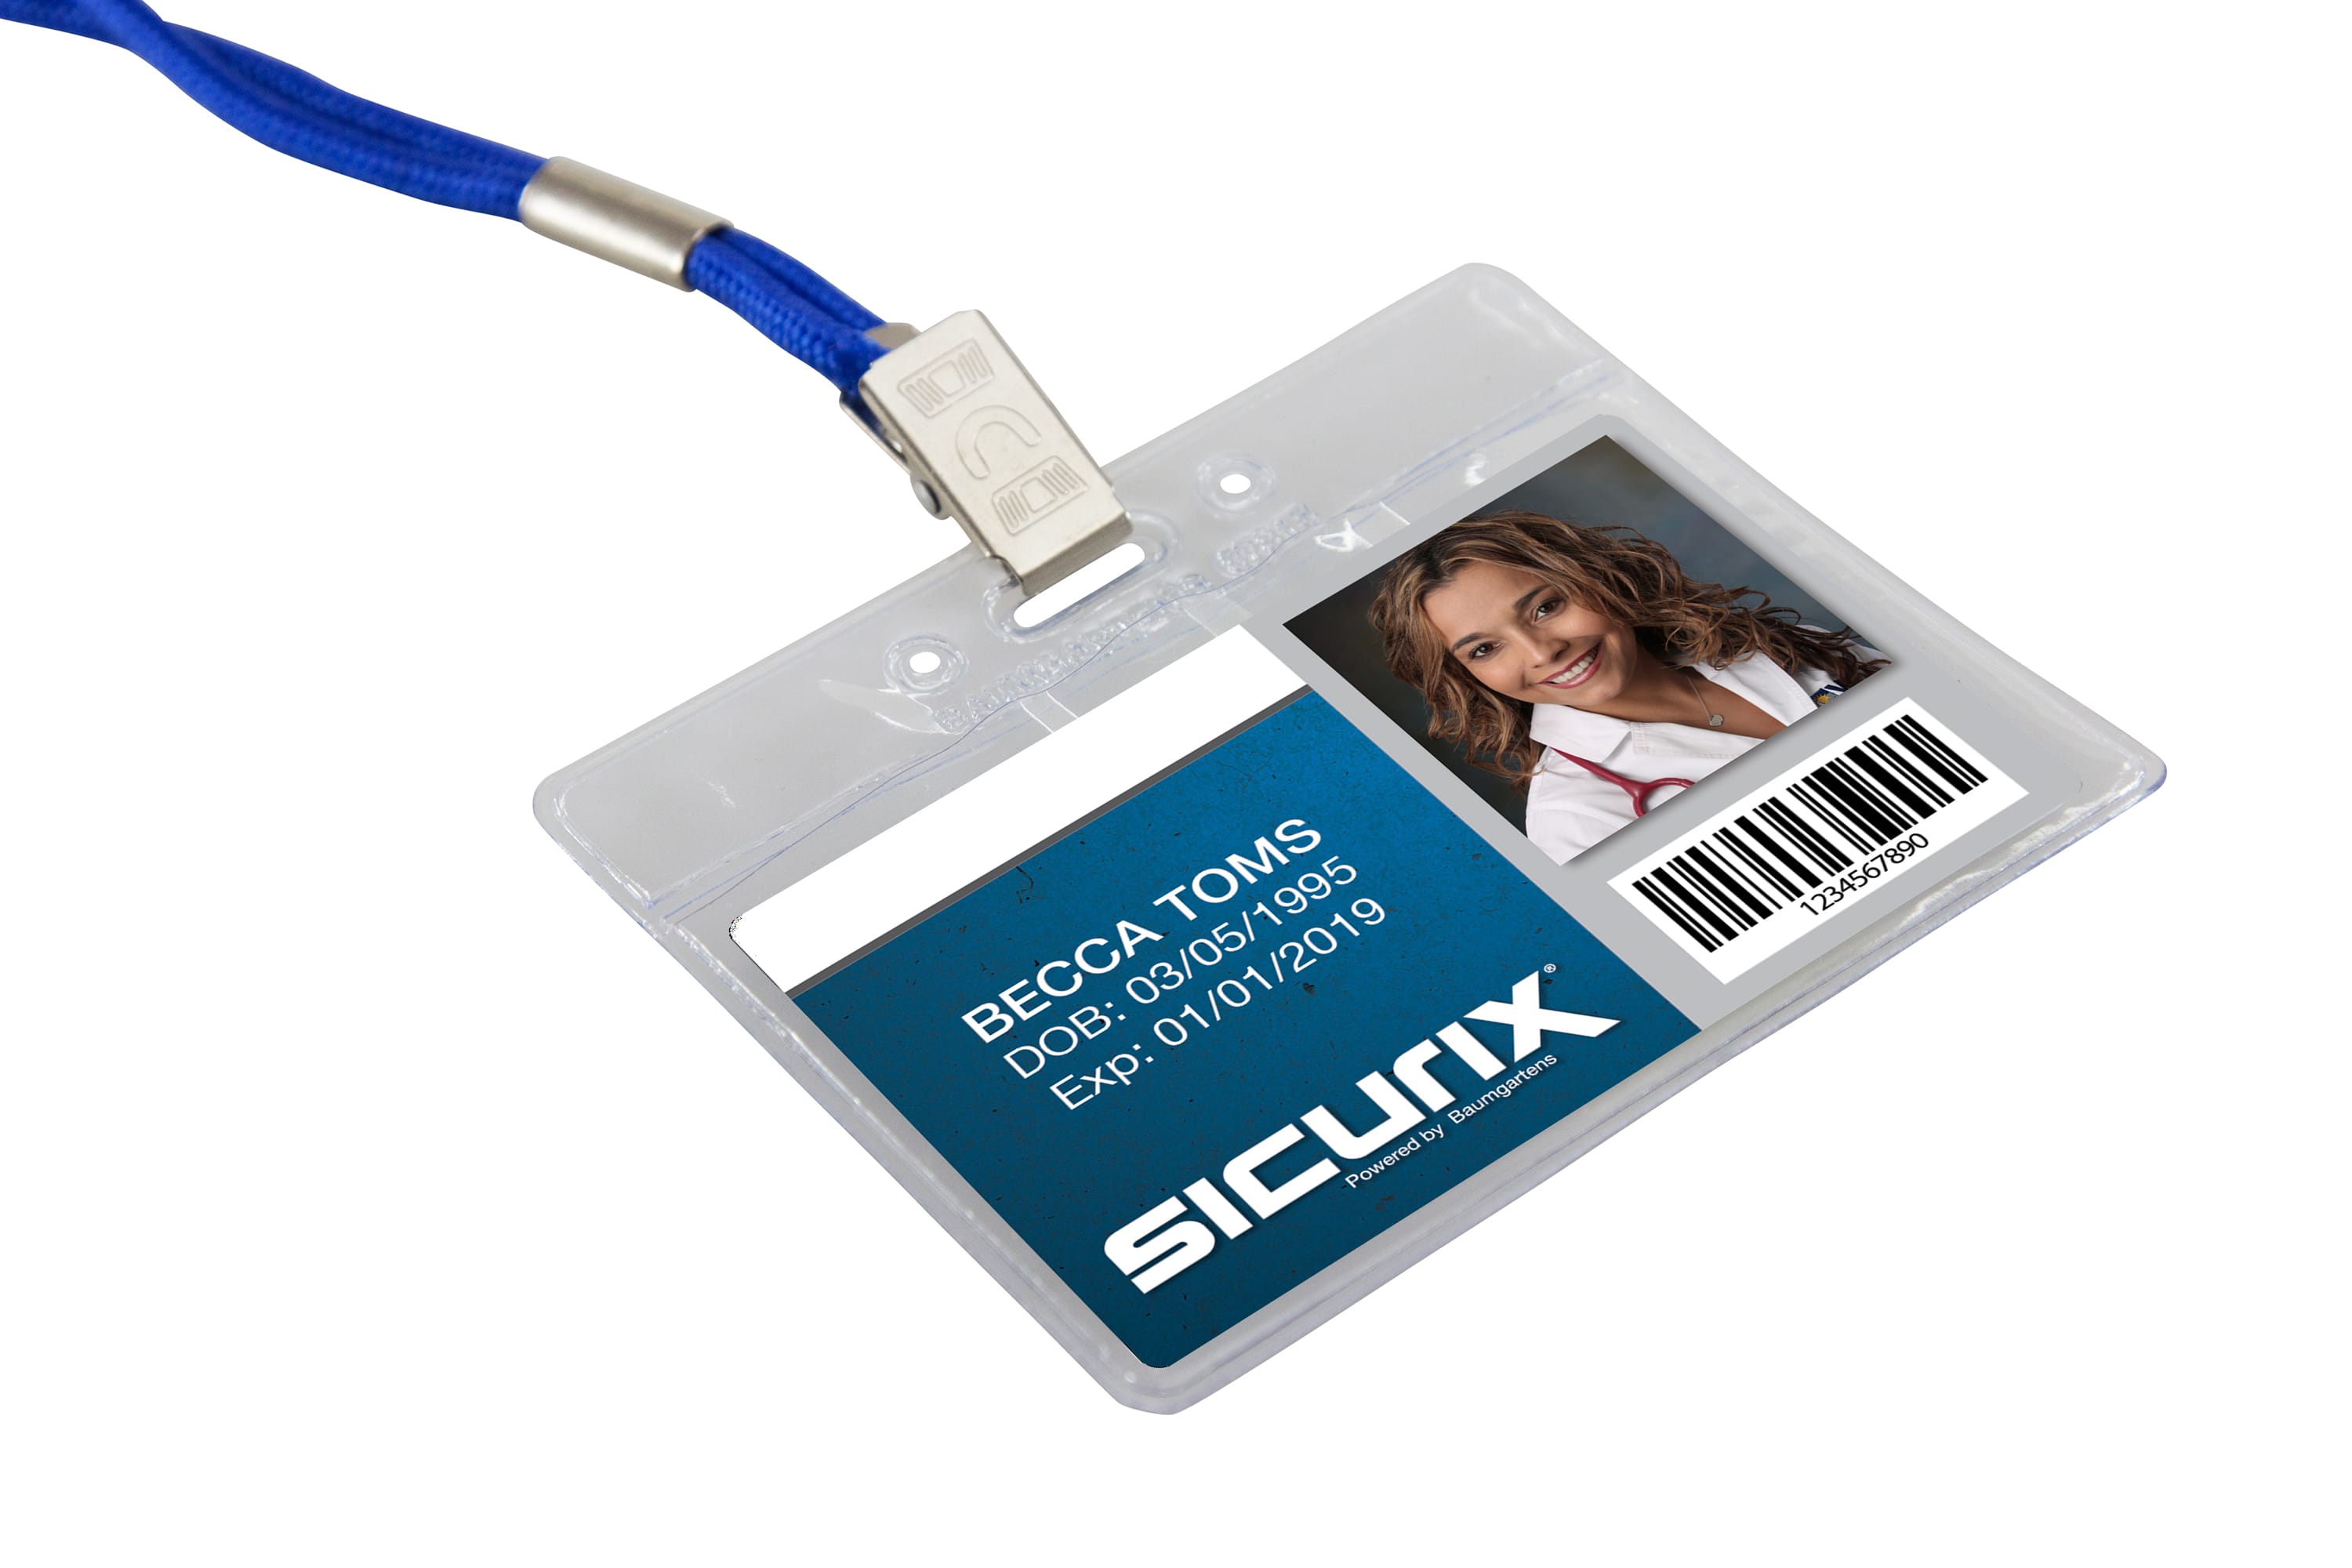 SICURIX Badge Holder Horizontal 50/pack (67815)